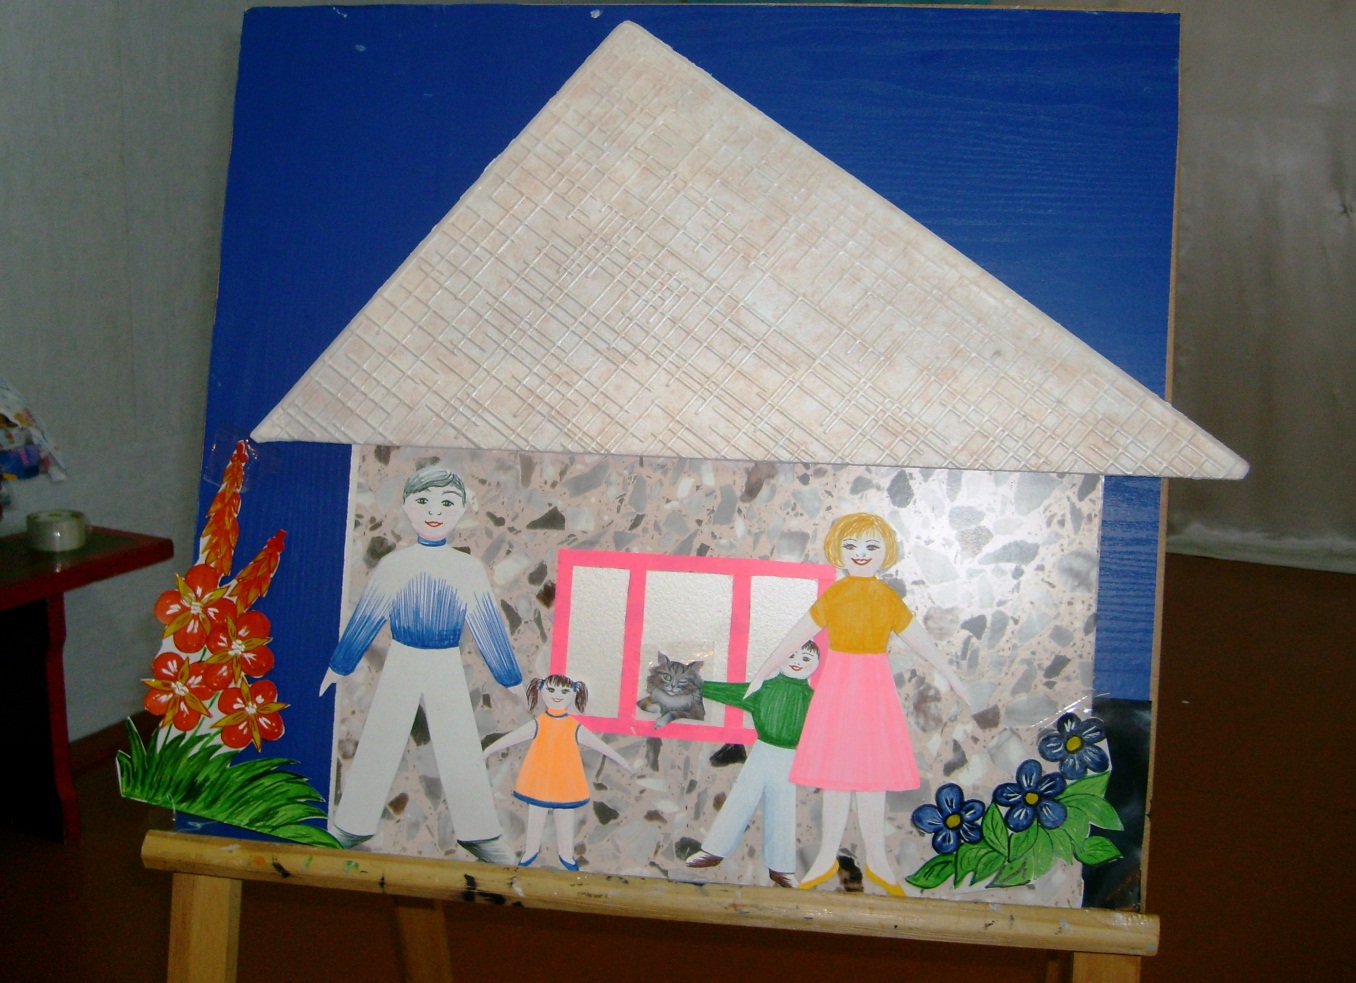 Конспект открытого занятия для воспитанников детского дома «Символ жизни - семья»